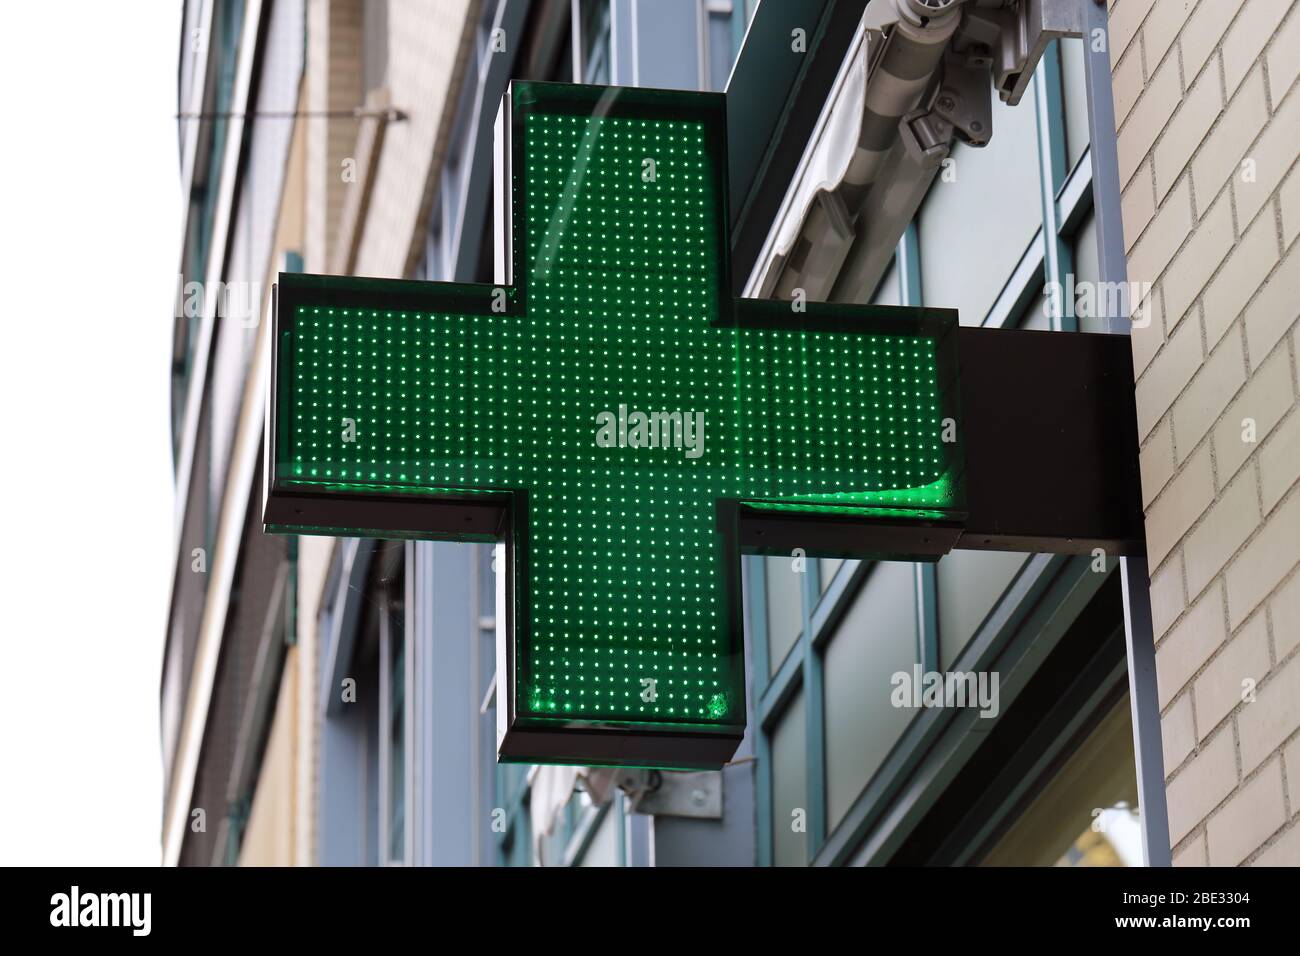 Enseigne pharmacie située dans le centre-ville de Zürich, Suisse. La croix verte avec lumière est un symbole universellement connu pour l'industrie pharmaceutique. Banque D'Images